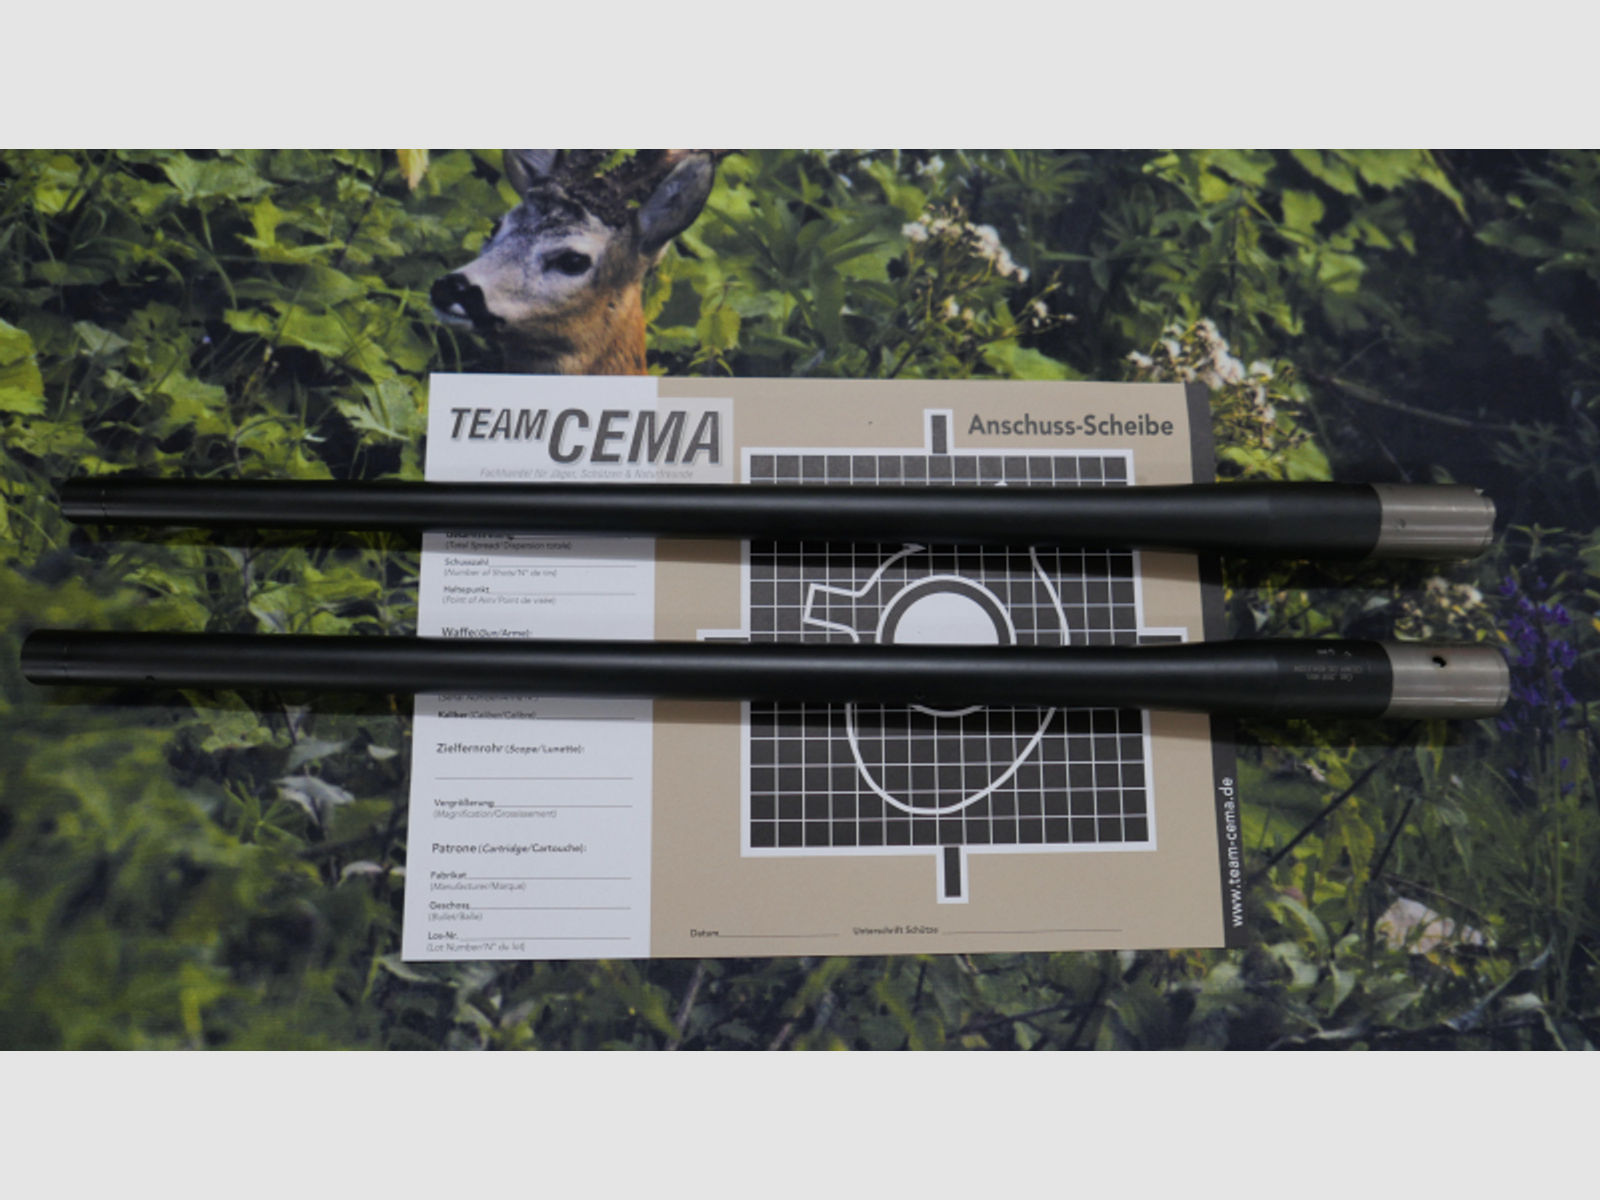 TEAM-CEMA S02 Wechsellauf-ATL- Sauer 404 - 505, cal. 308 Win. - 8,5 x 55 Blaser von TEAM-CEMA.DE